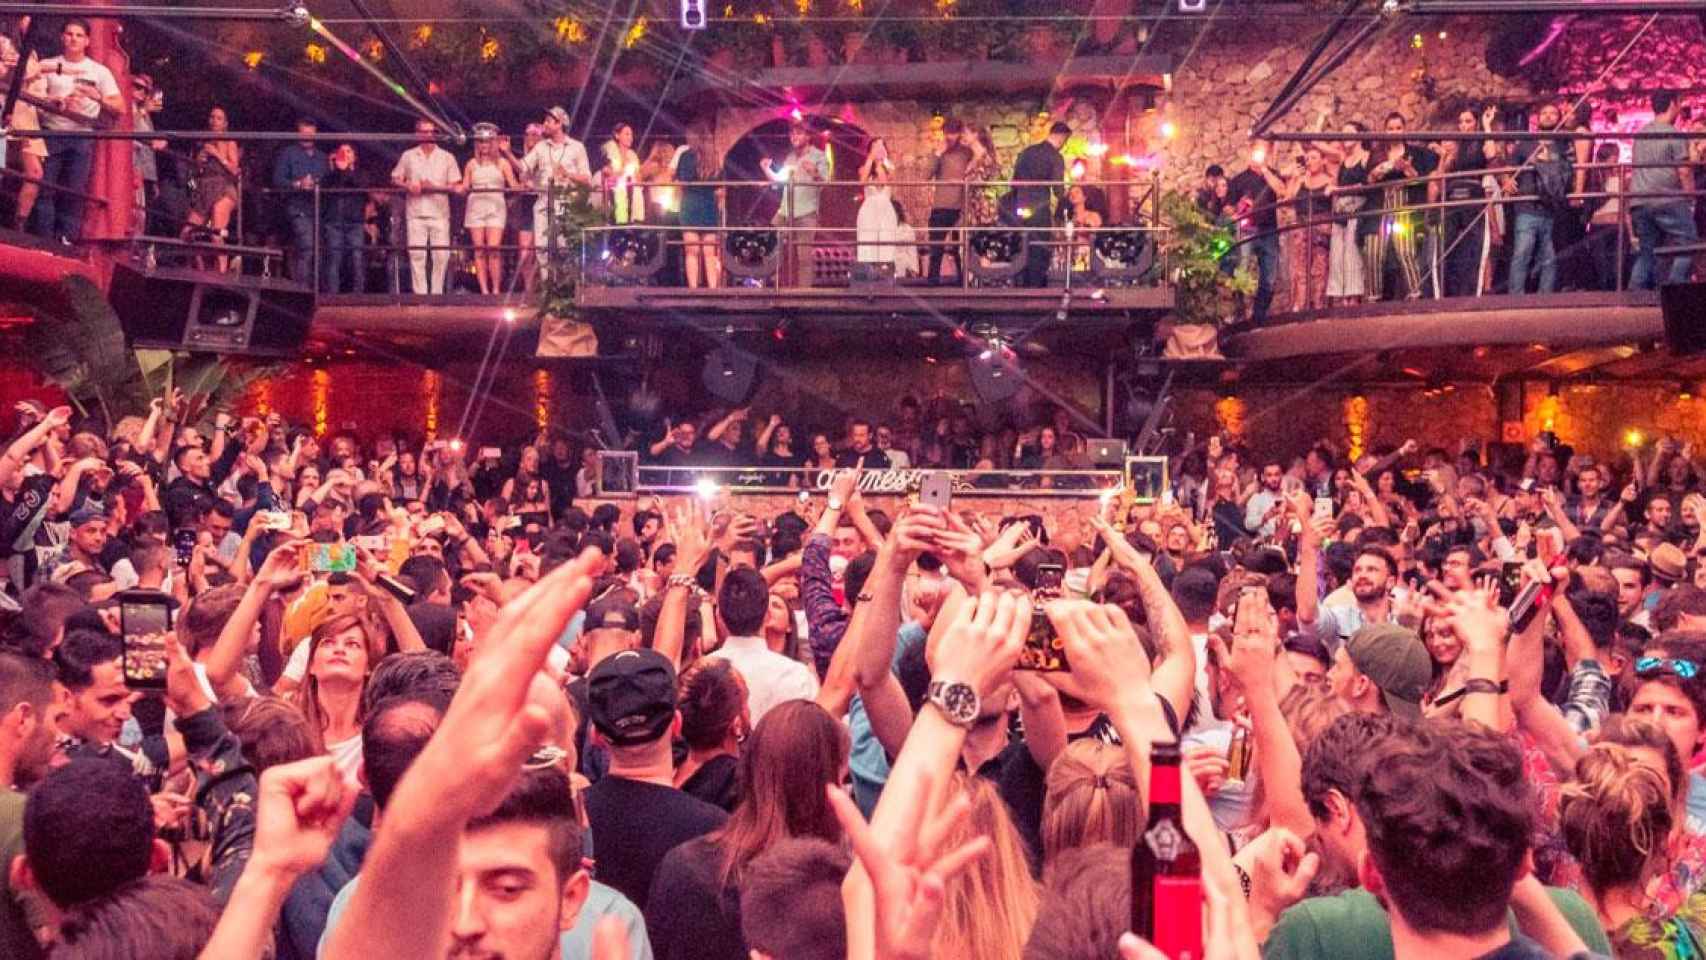 Imagen de Amnesia Ibiza, una de las discotecas golpeadas por la pandemia: no abrirá este verano / CG